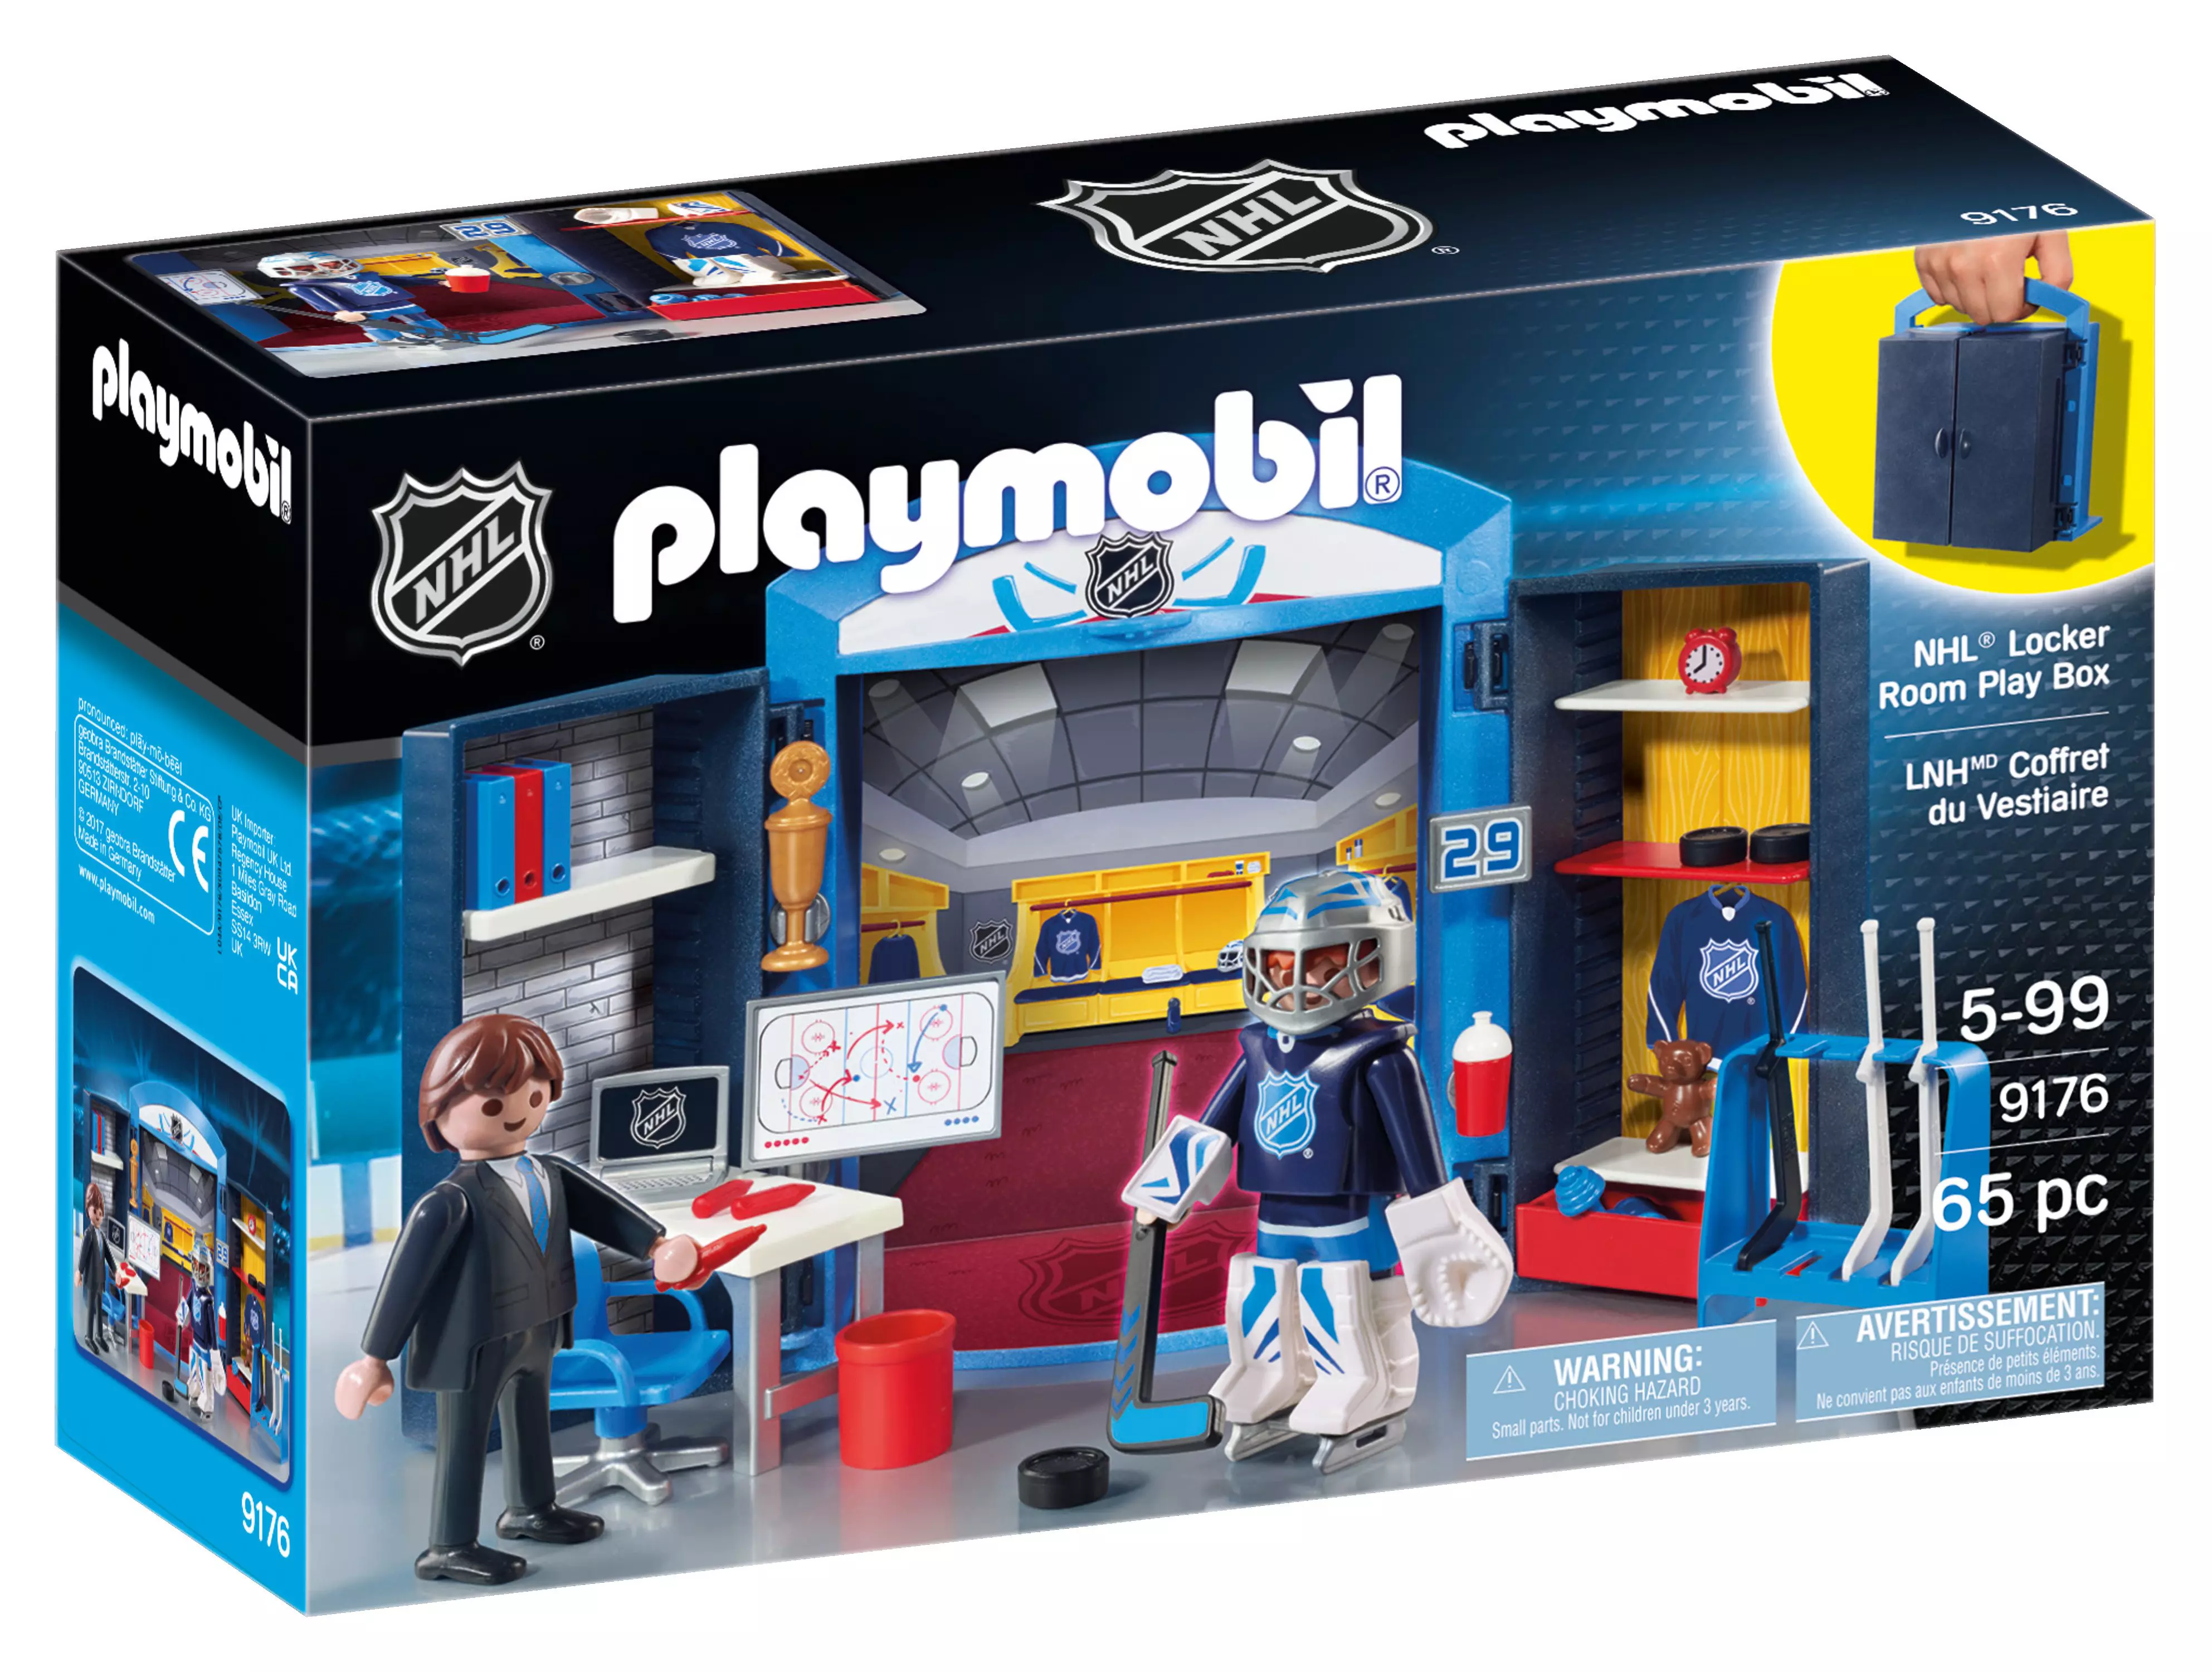 Playmobil Nhl Locker Room Play Box